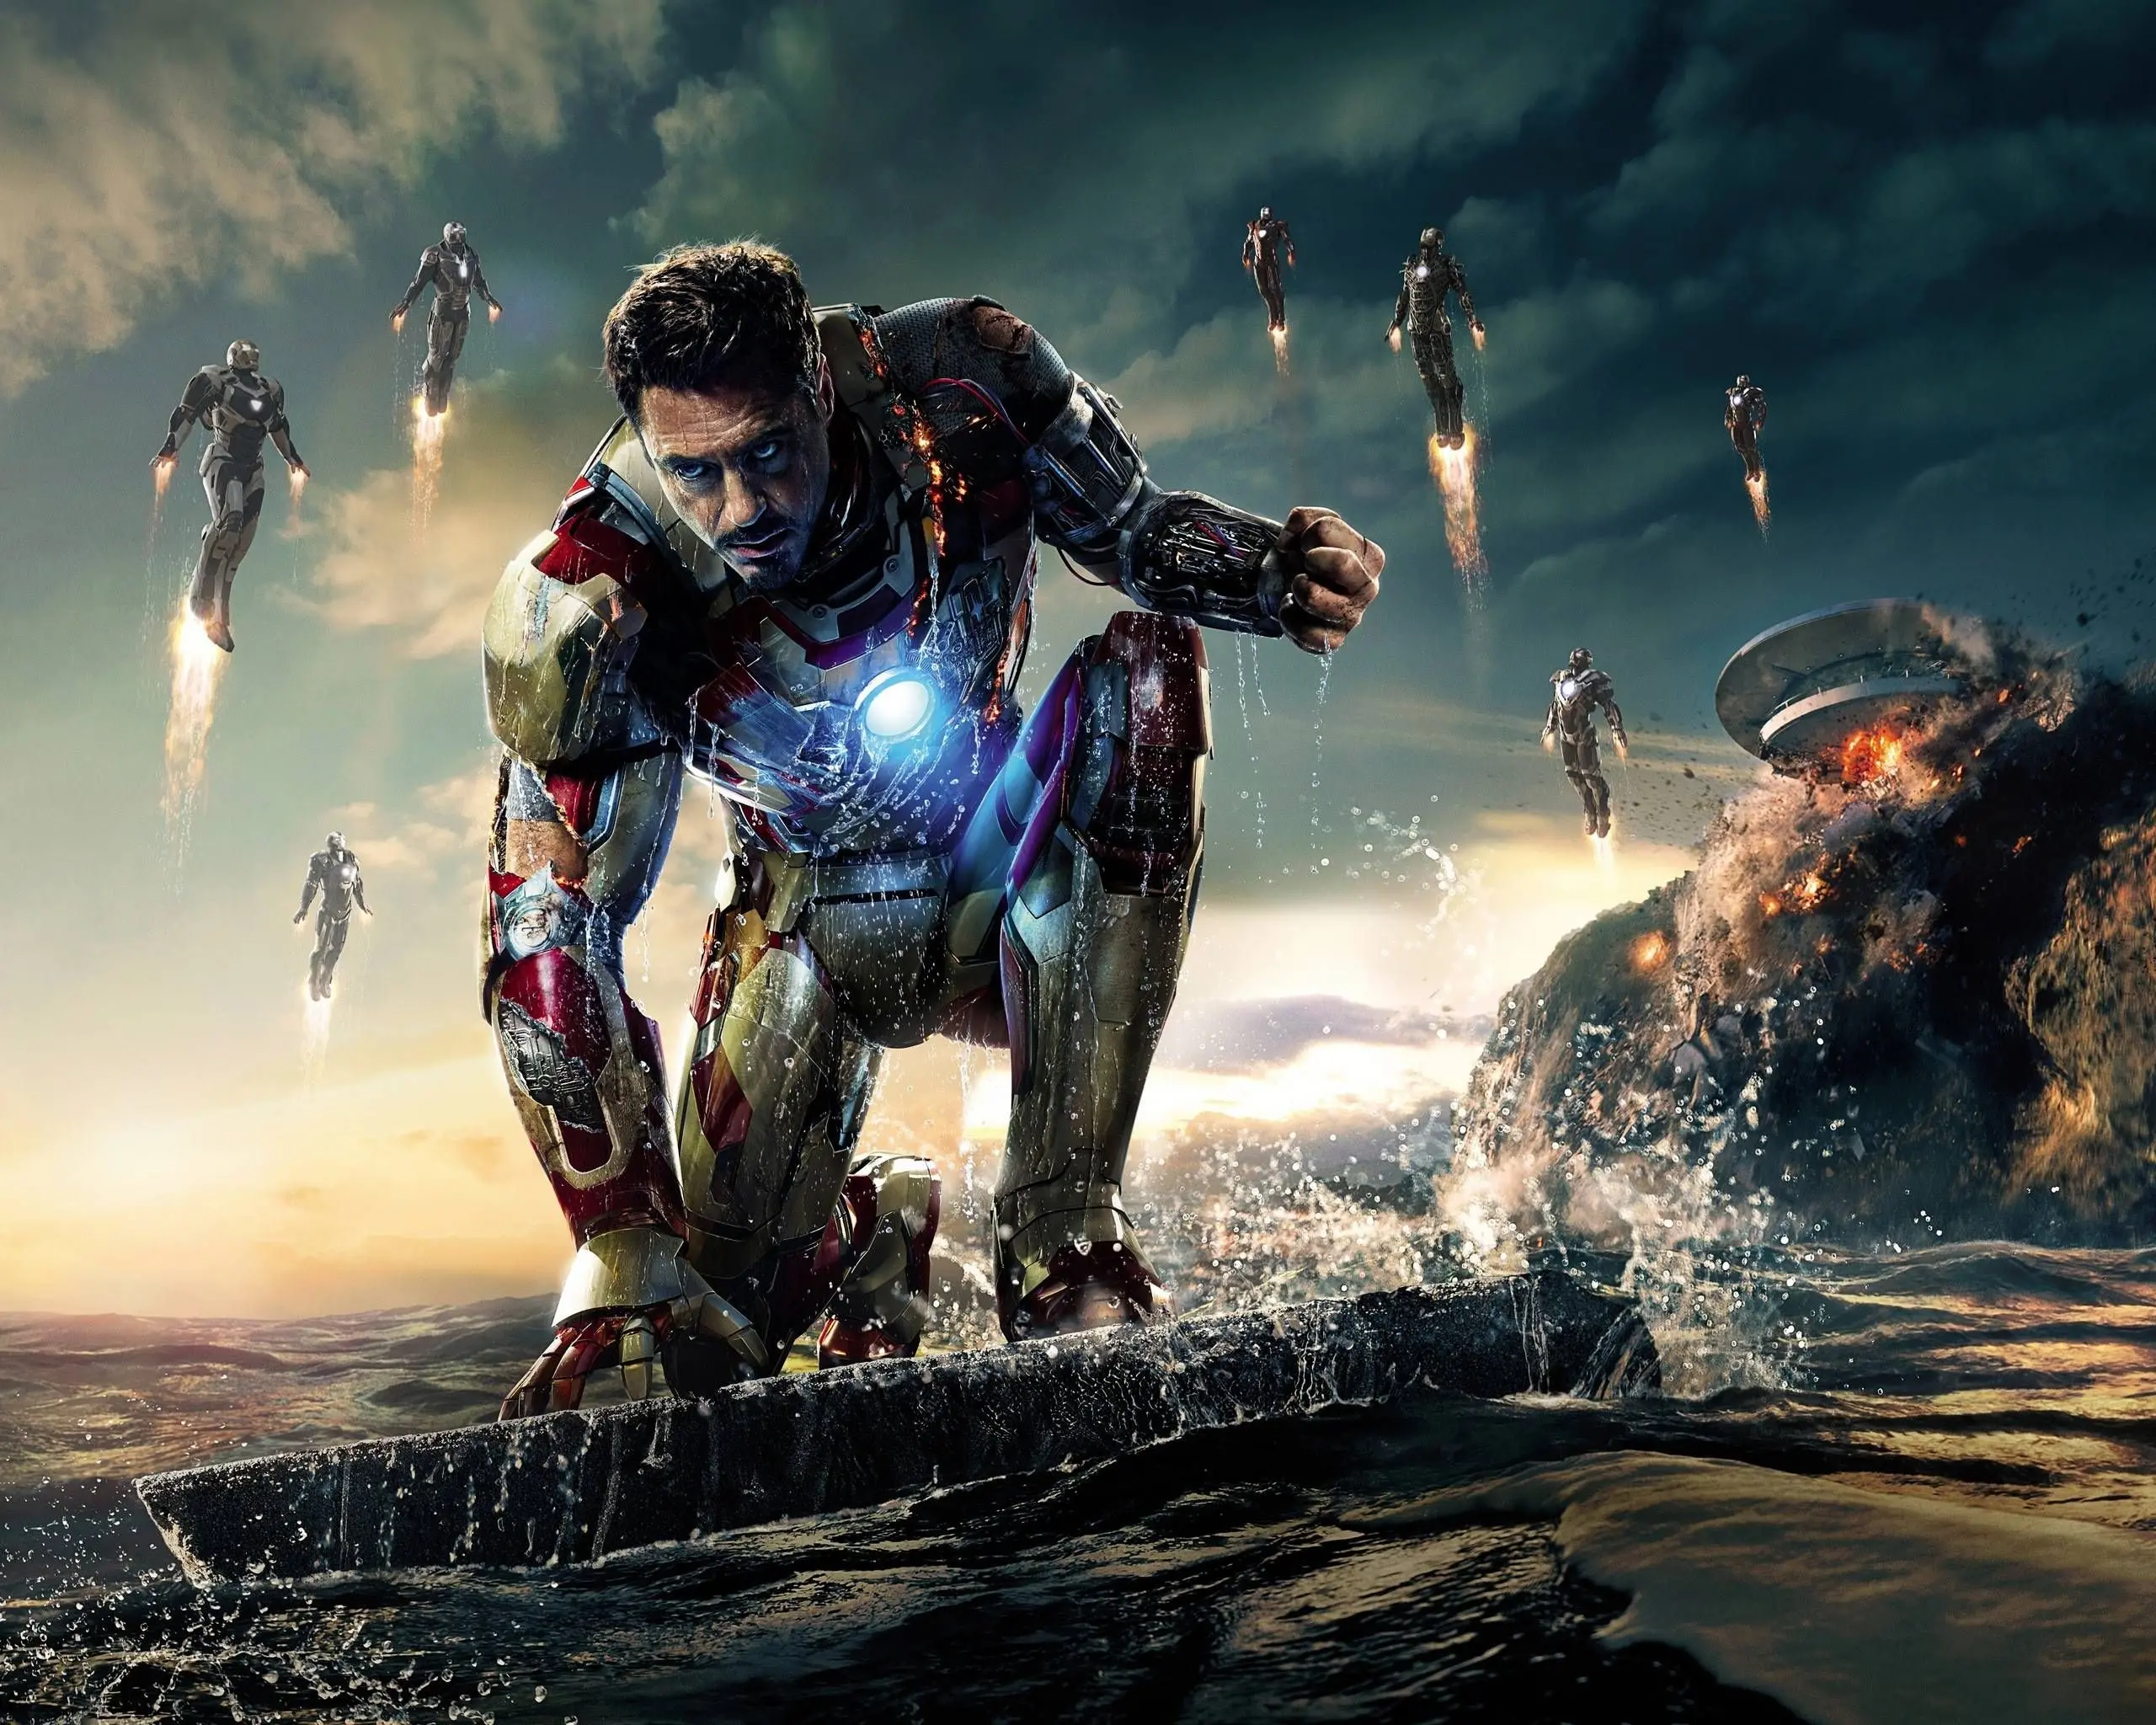 Tony Stark di adegan terakhir Iron Man 3 palsu, diciptakan dengan teknologi CGI untuk menggantikan 